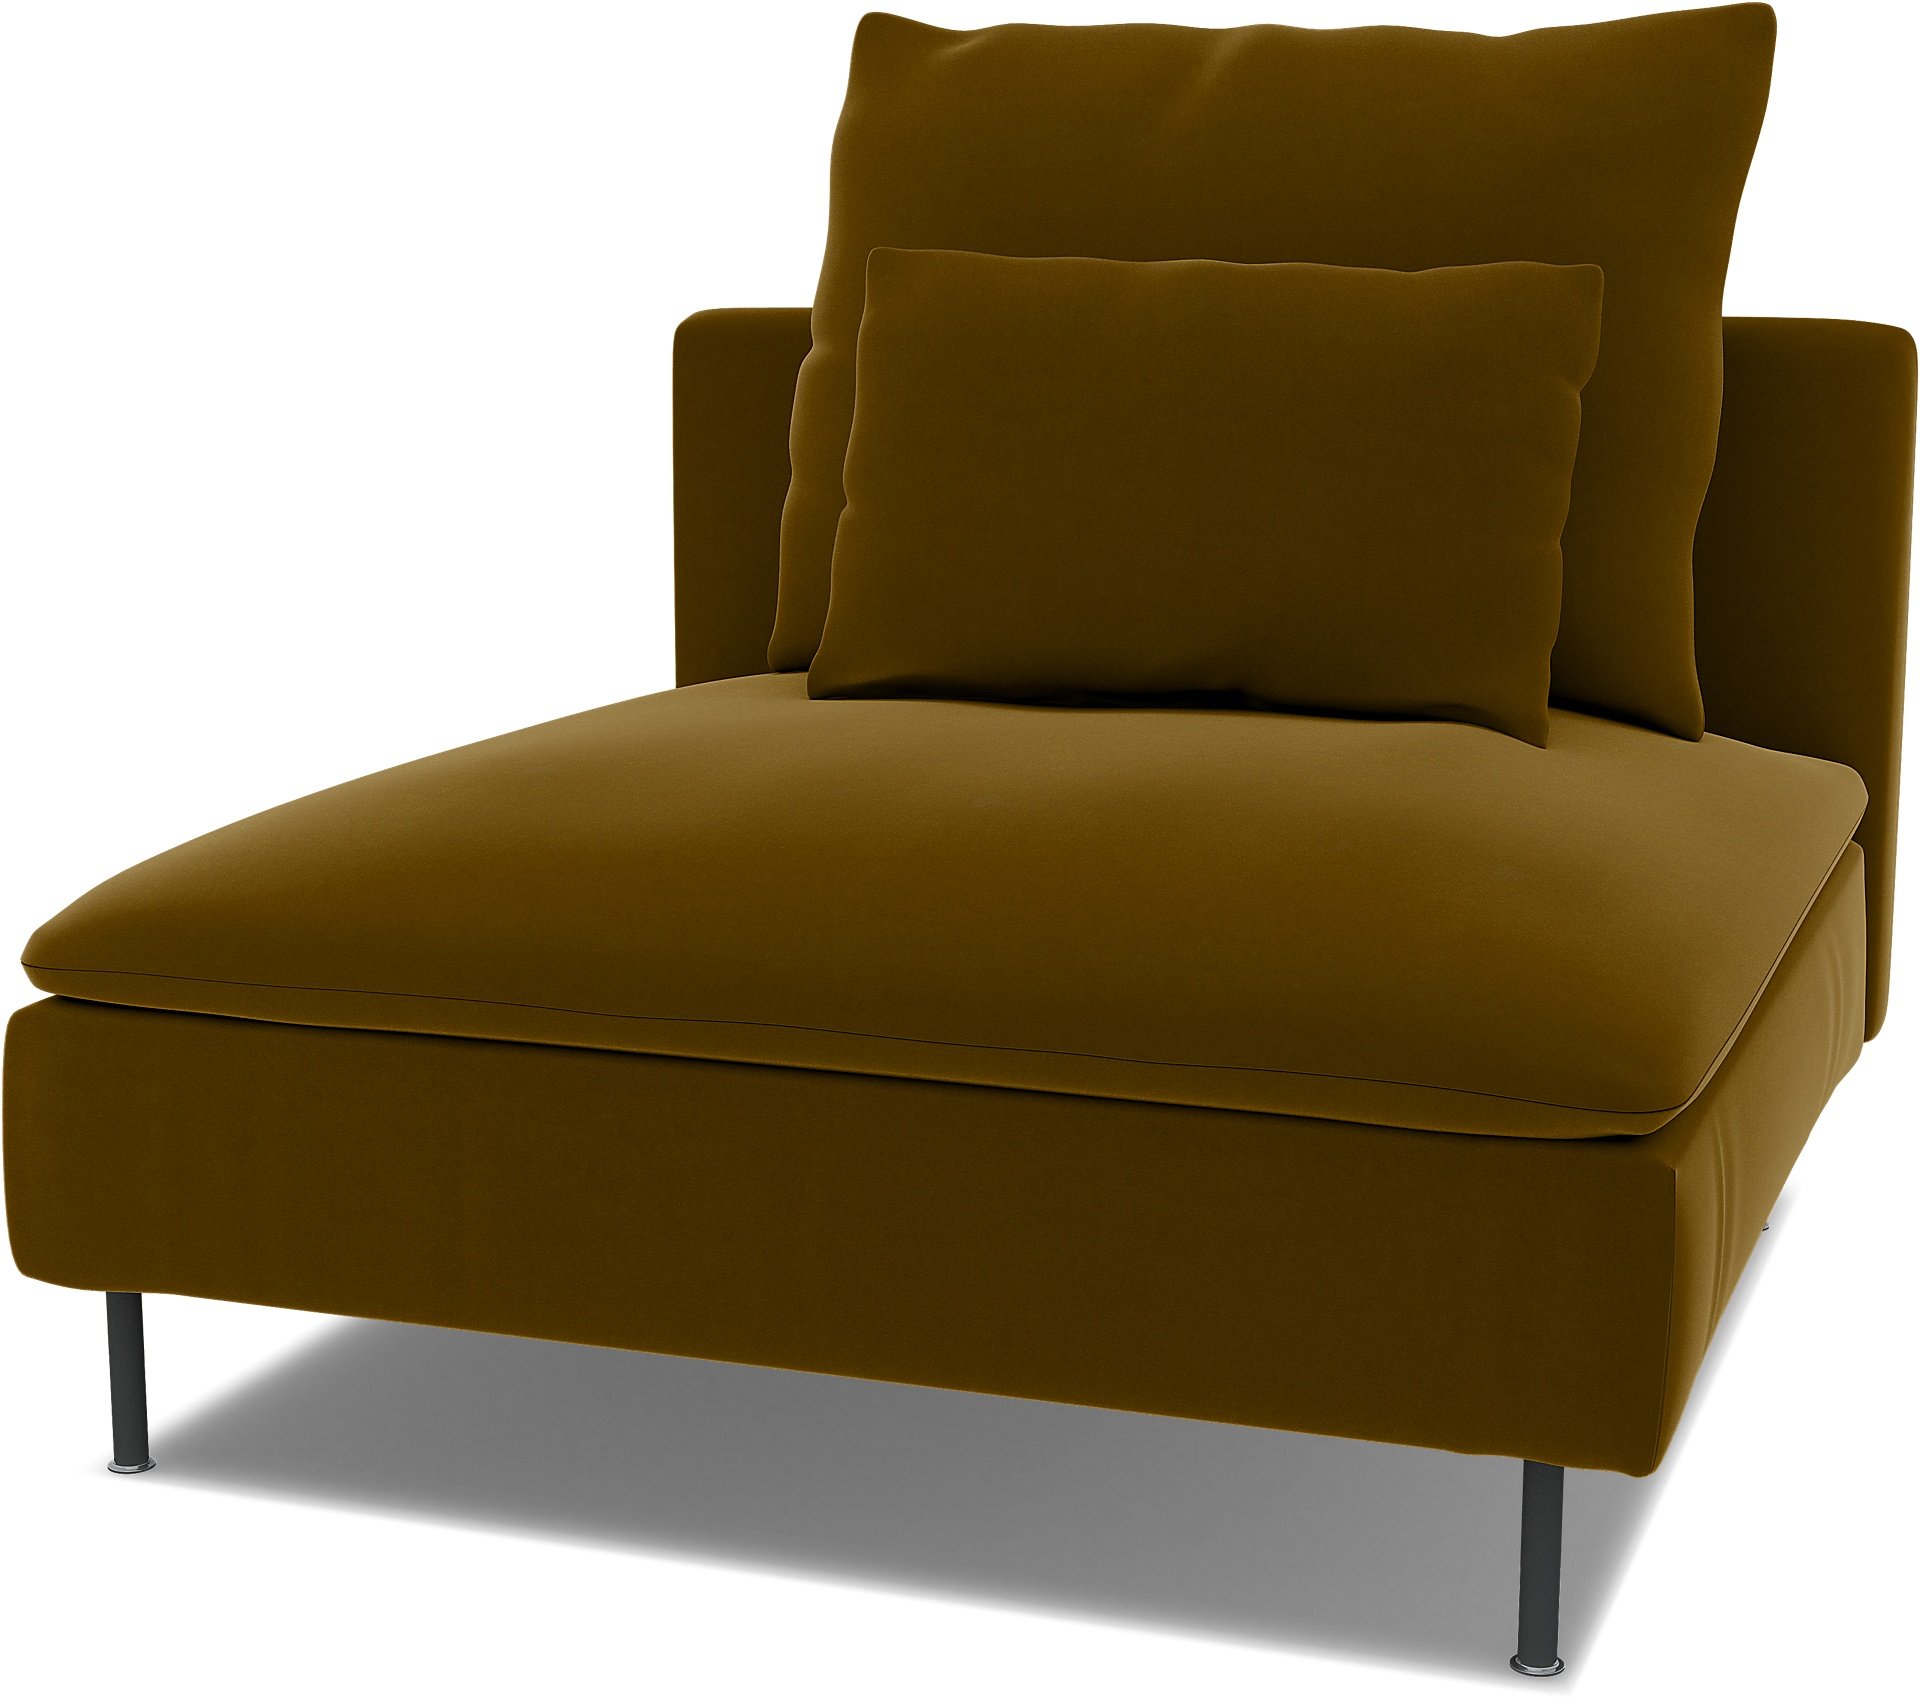 Spare seat cushion cover for SODERHAMN 1 SEAT SECTION , Turmeric, Velvet - Bemz